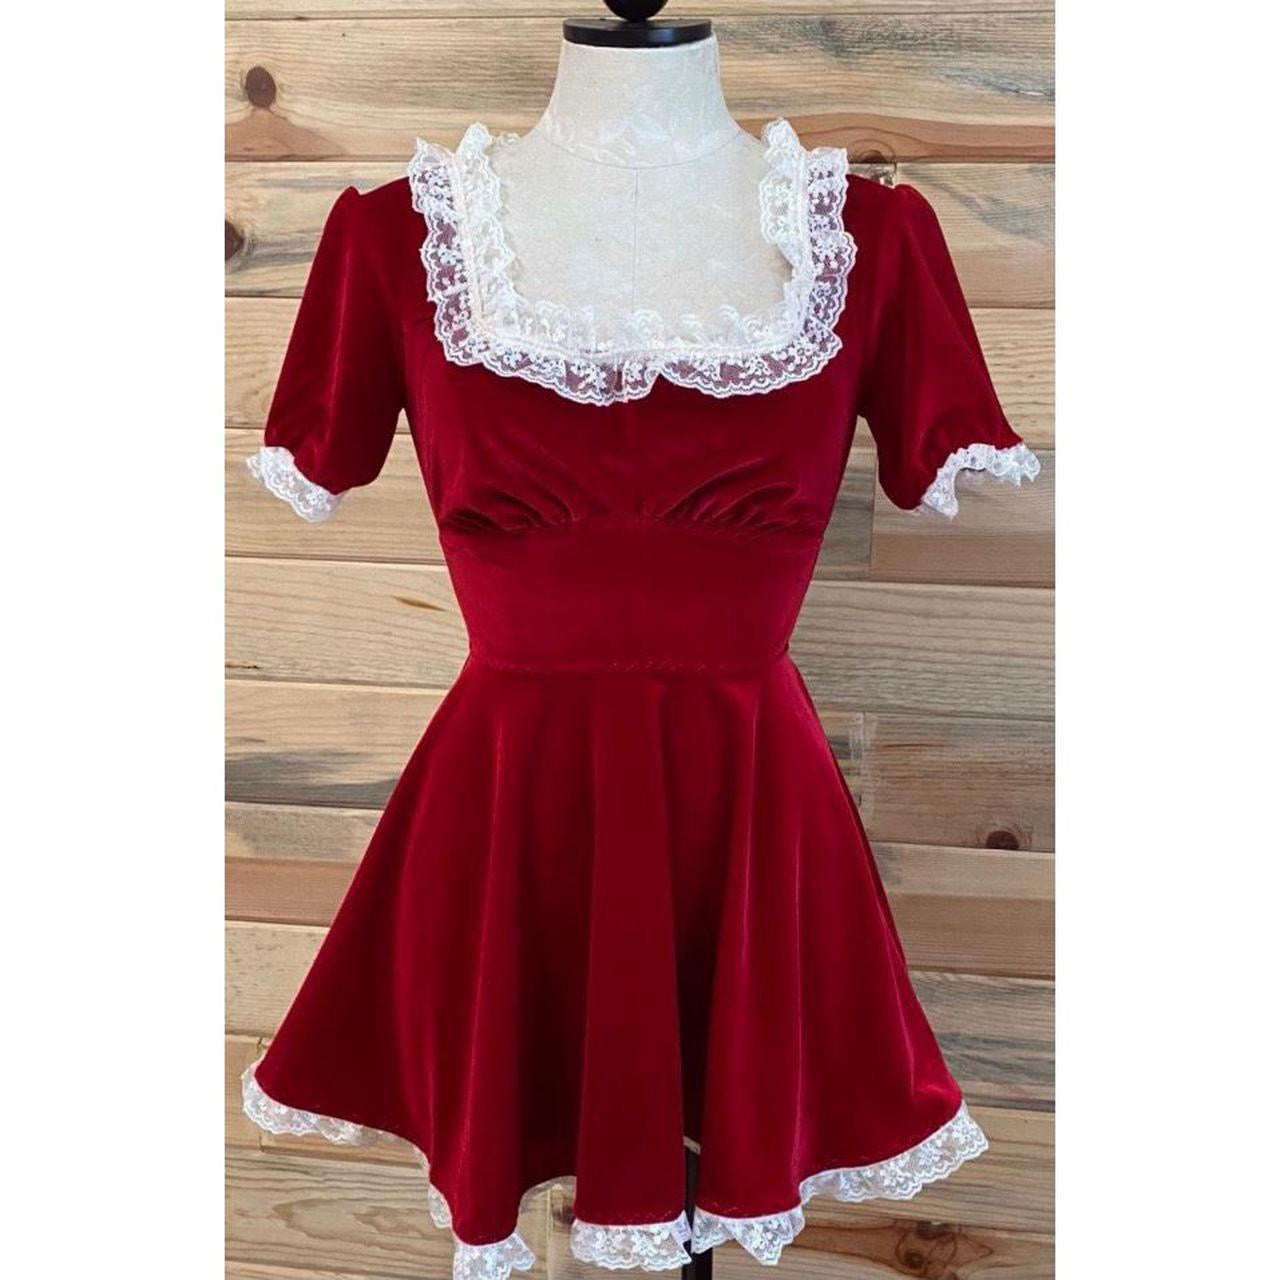 The Duyen Dress in Red Velvet